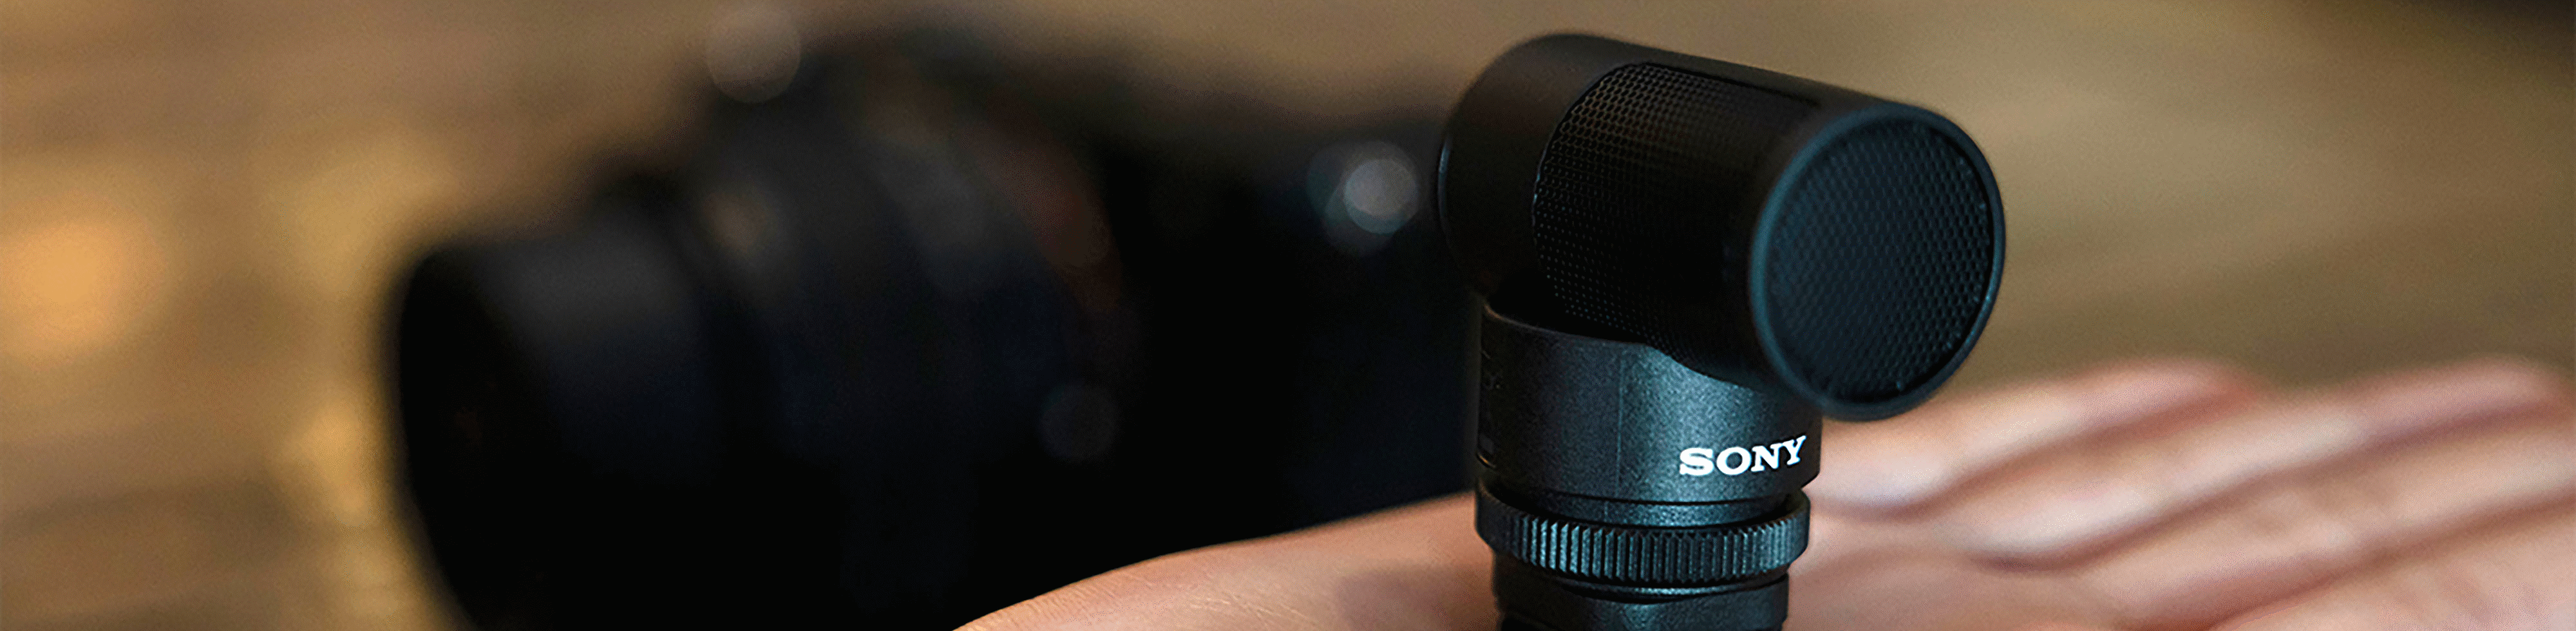 Ein Foto des ECM-G1, das zeigt, dass das Mikrofon kompakt genug ist, um in eine Hand zu passen.